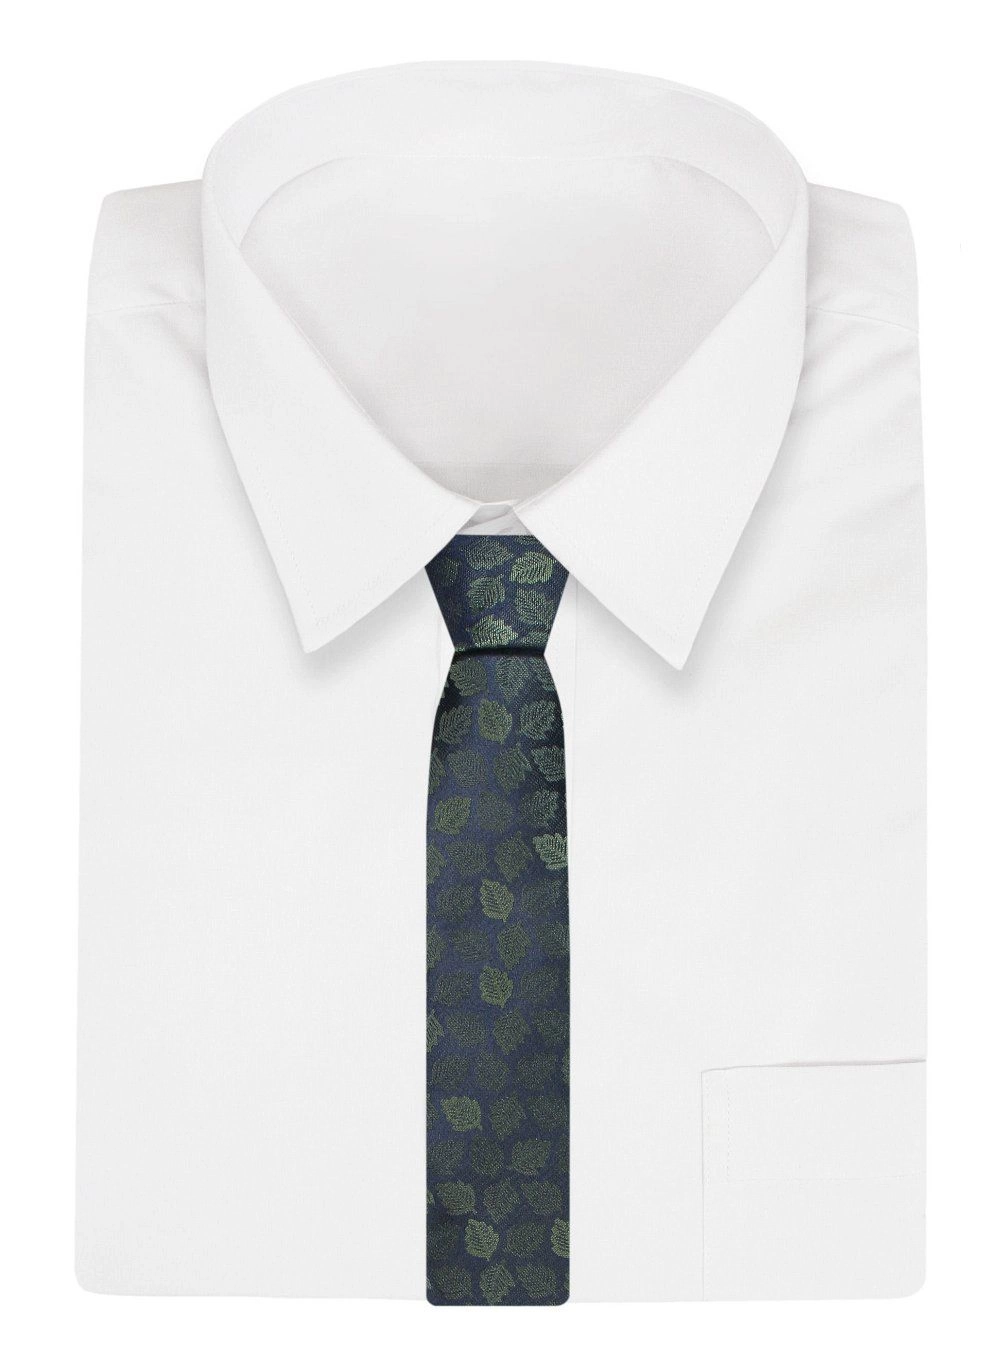 Krawat Klasyczny, Granatowy w Zielone Listki, Męski, Szeroki 8 cm, Elegancki -CHATTIER